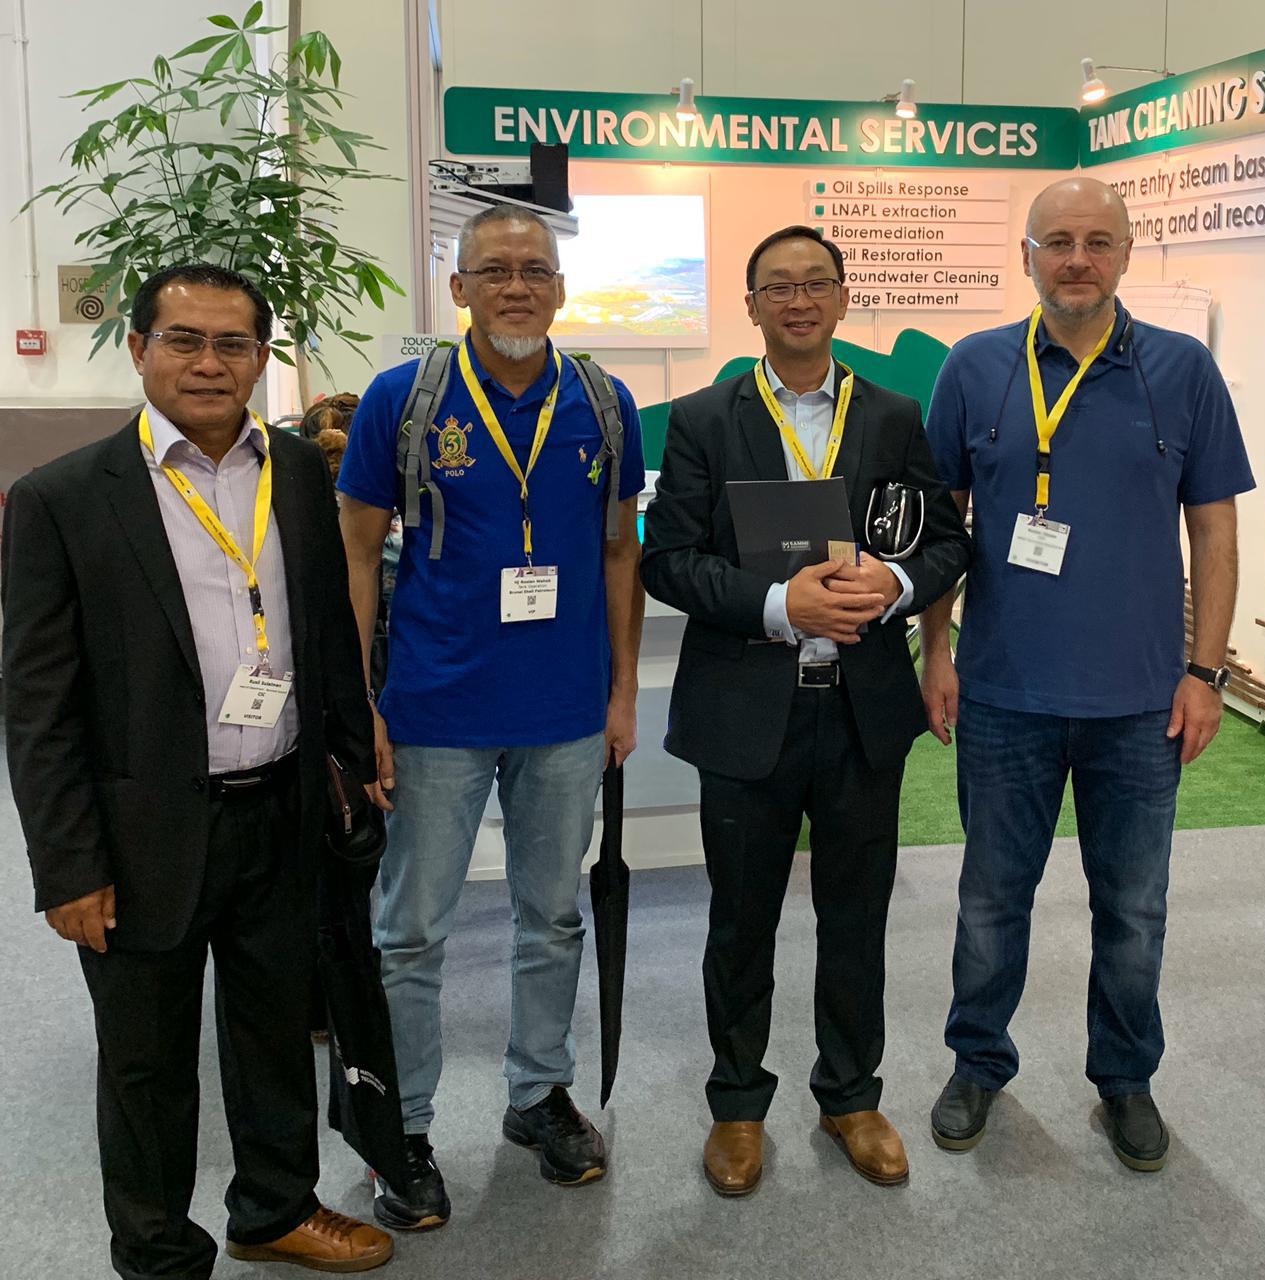 Учредитель компании Руслан Токаев с представителями брунейской нефтесервисной компании Ихиро Отани и Русли Сулейманом, а также с Росланом Вахабом из Brunei Shell Petroleum